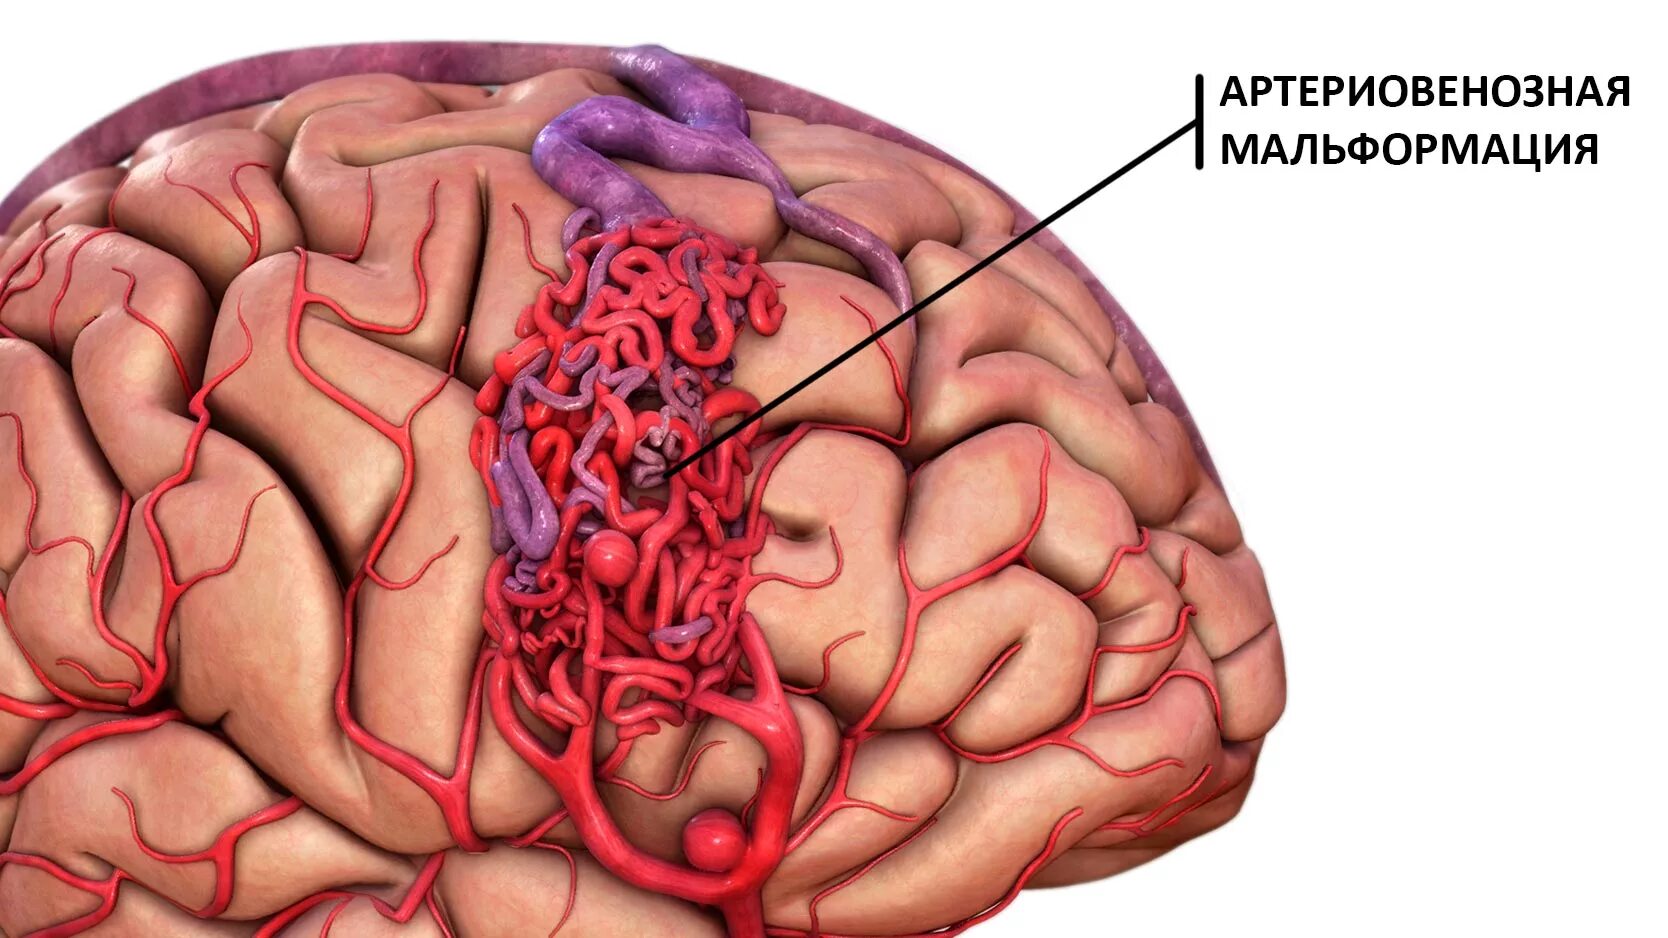 Инсульт левой артерии. АВМ мальформация сосудов головного мозга. Ртерио-венозная мальформация. Артериовенозная мальформация. Артериовенозные мальформации (АВМ) головного мозга..